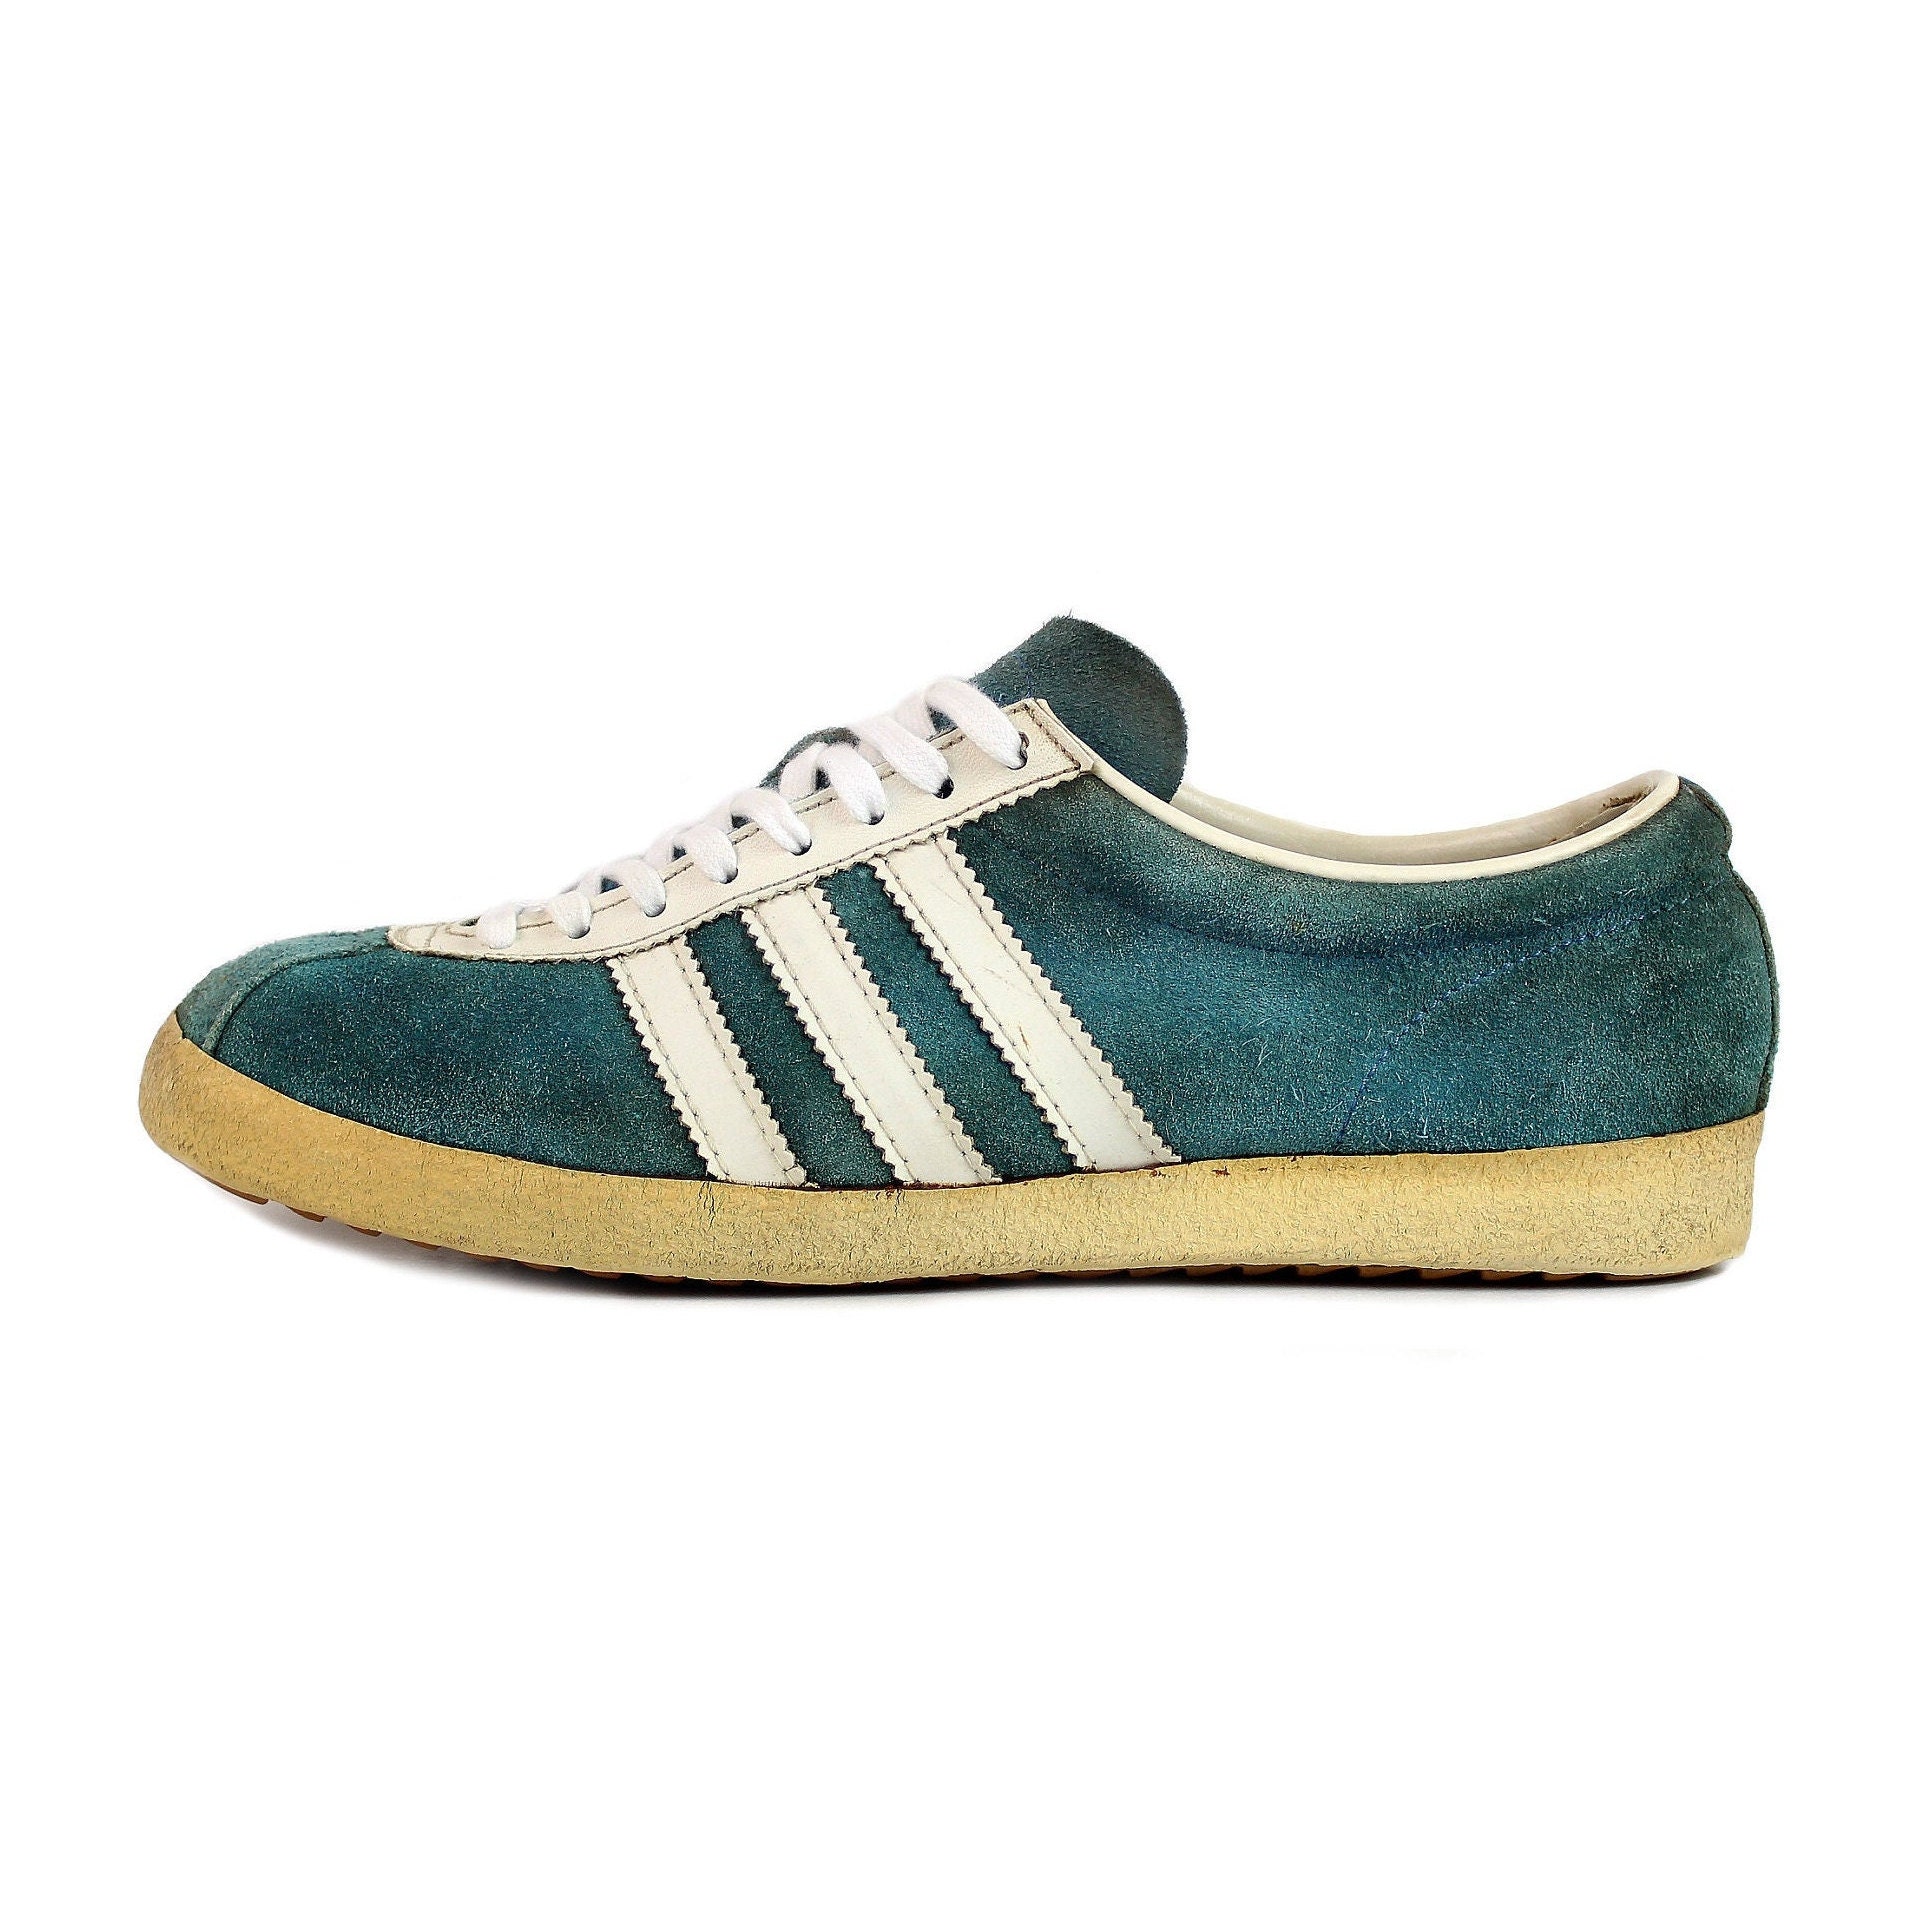 Descartar Honesto caridad 1969 60s Vintage Adidas Athen Sneakers Kicks Shoes Trainers - Etsy